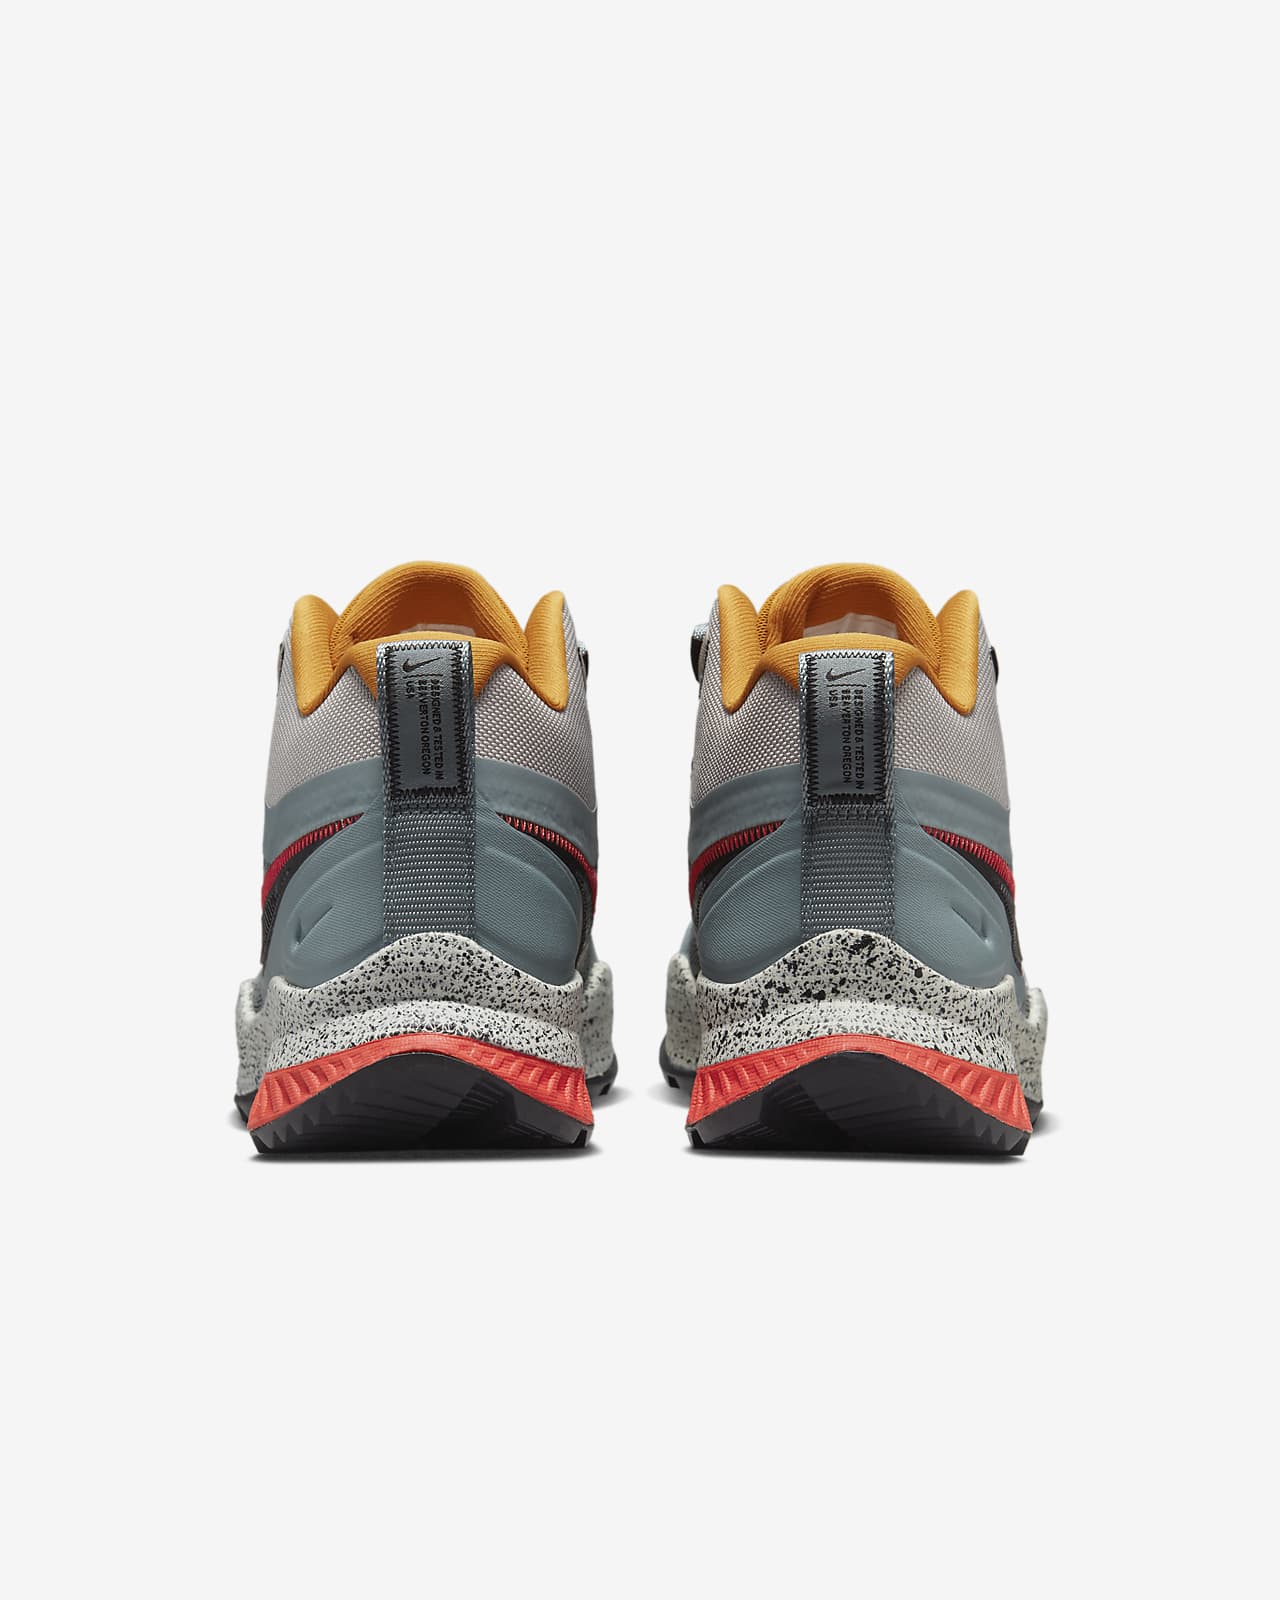 React SFB Carbon Men's Elite Outdoor Shoes.